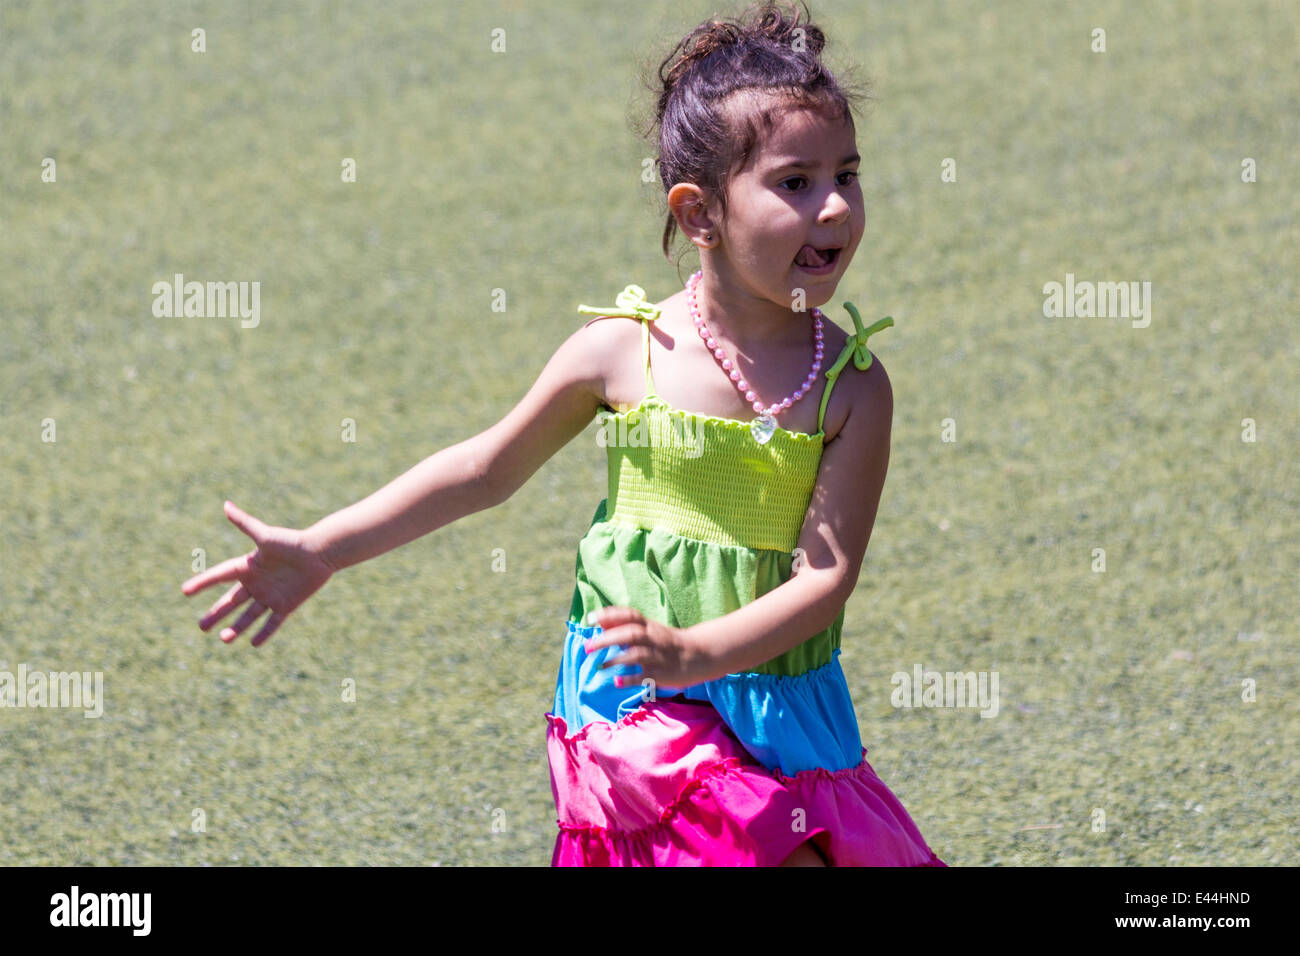 Petite fille danse sur l'herbe avec sa langue qui sort Banque D'Images